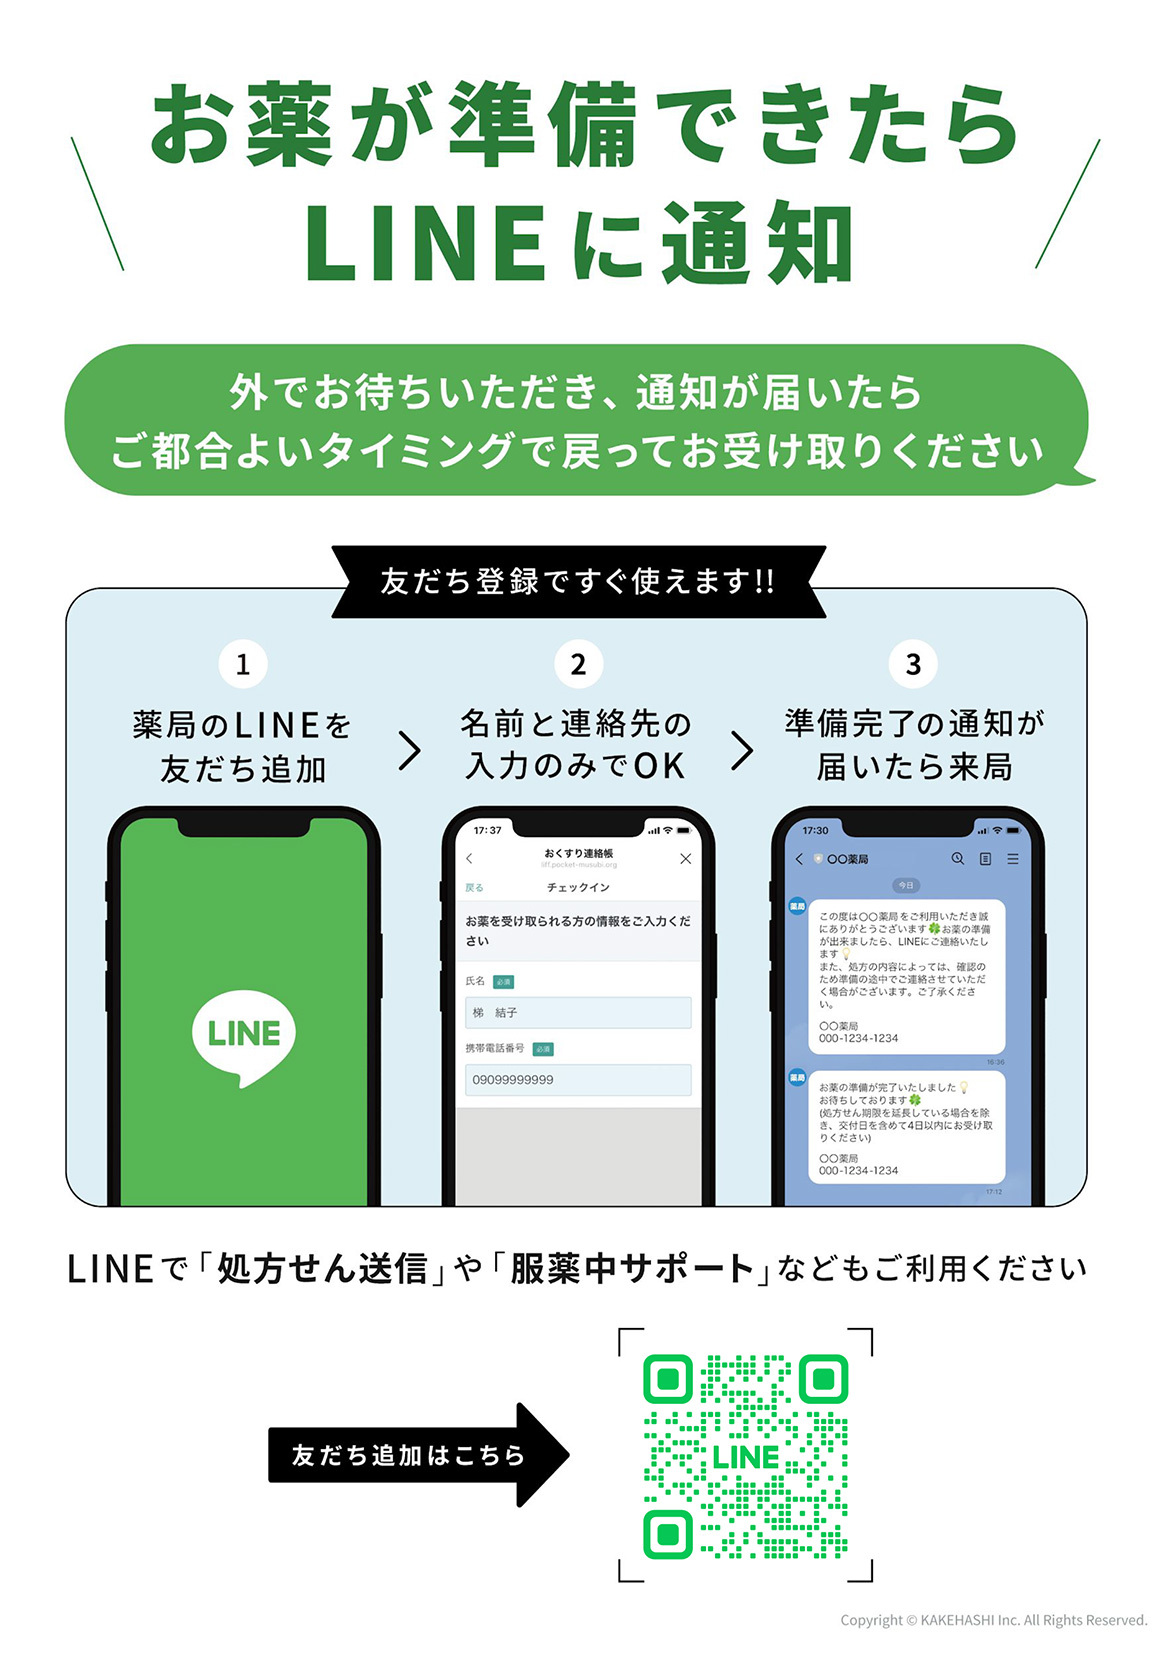 LINE公式アカウント案内